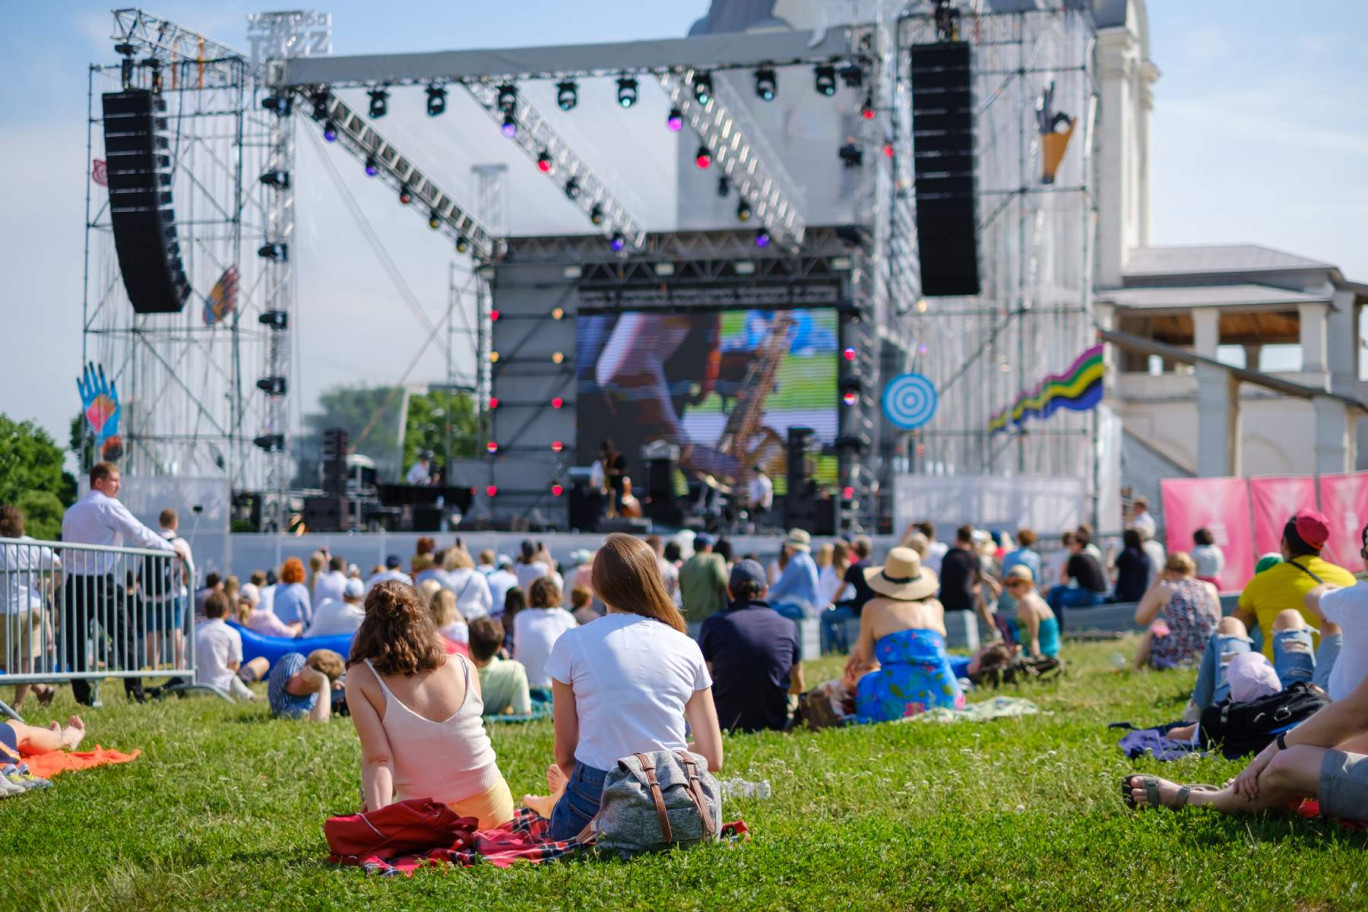 Pour nombre de festivals en plein-air, l'obligation d'accueillir cet été 5 000 spectateurs maximum en version assise n'est pas tenable financièrement. © Anton Gvozdikov